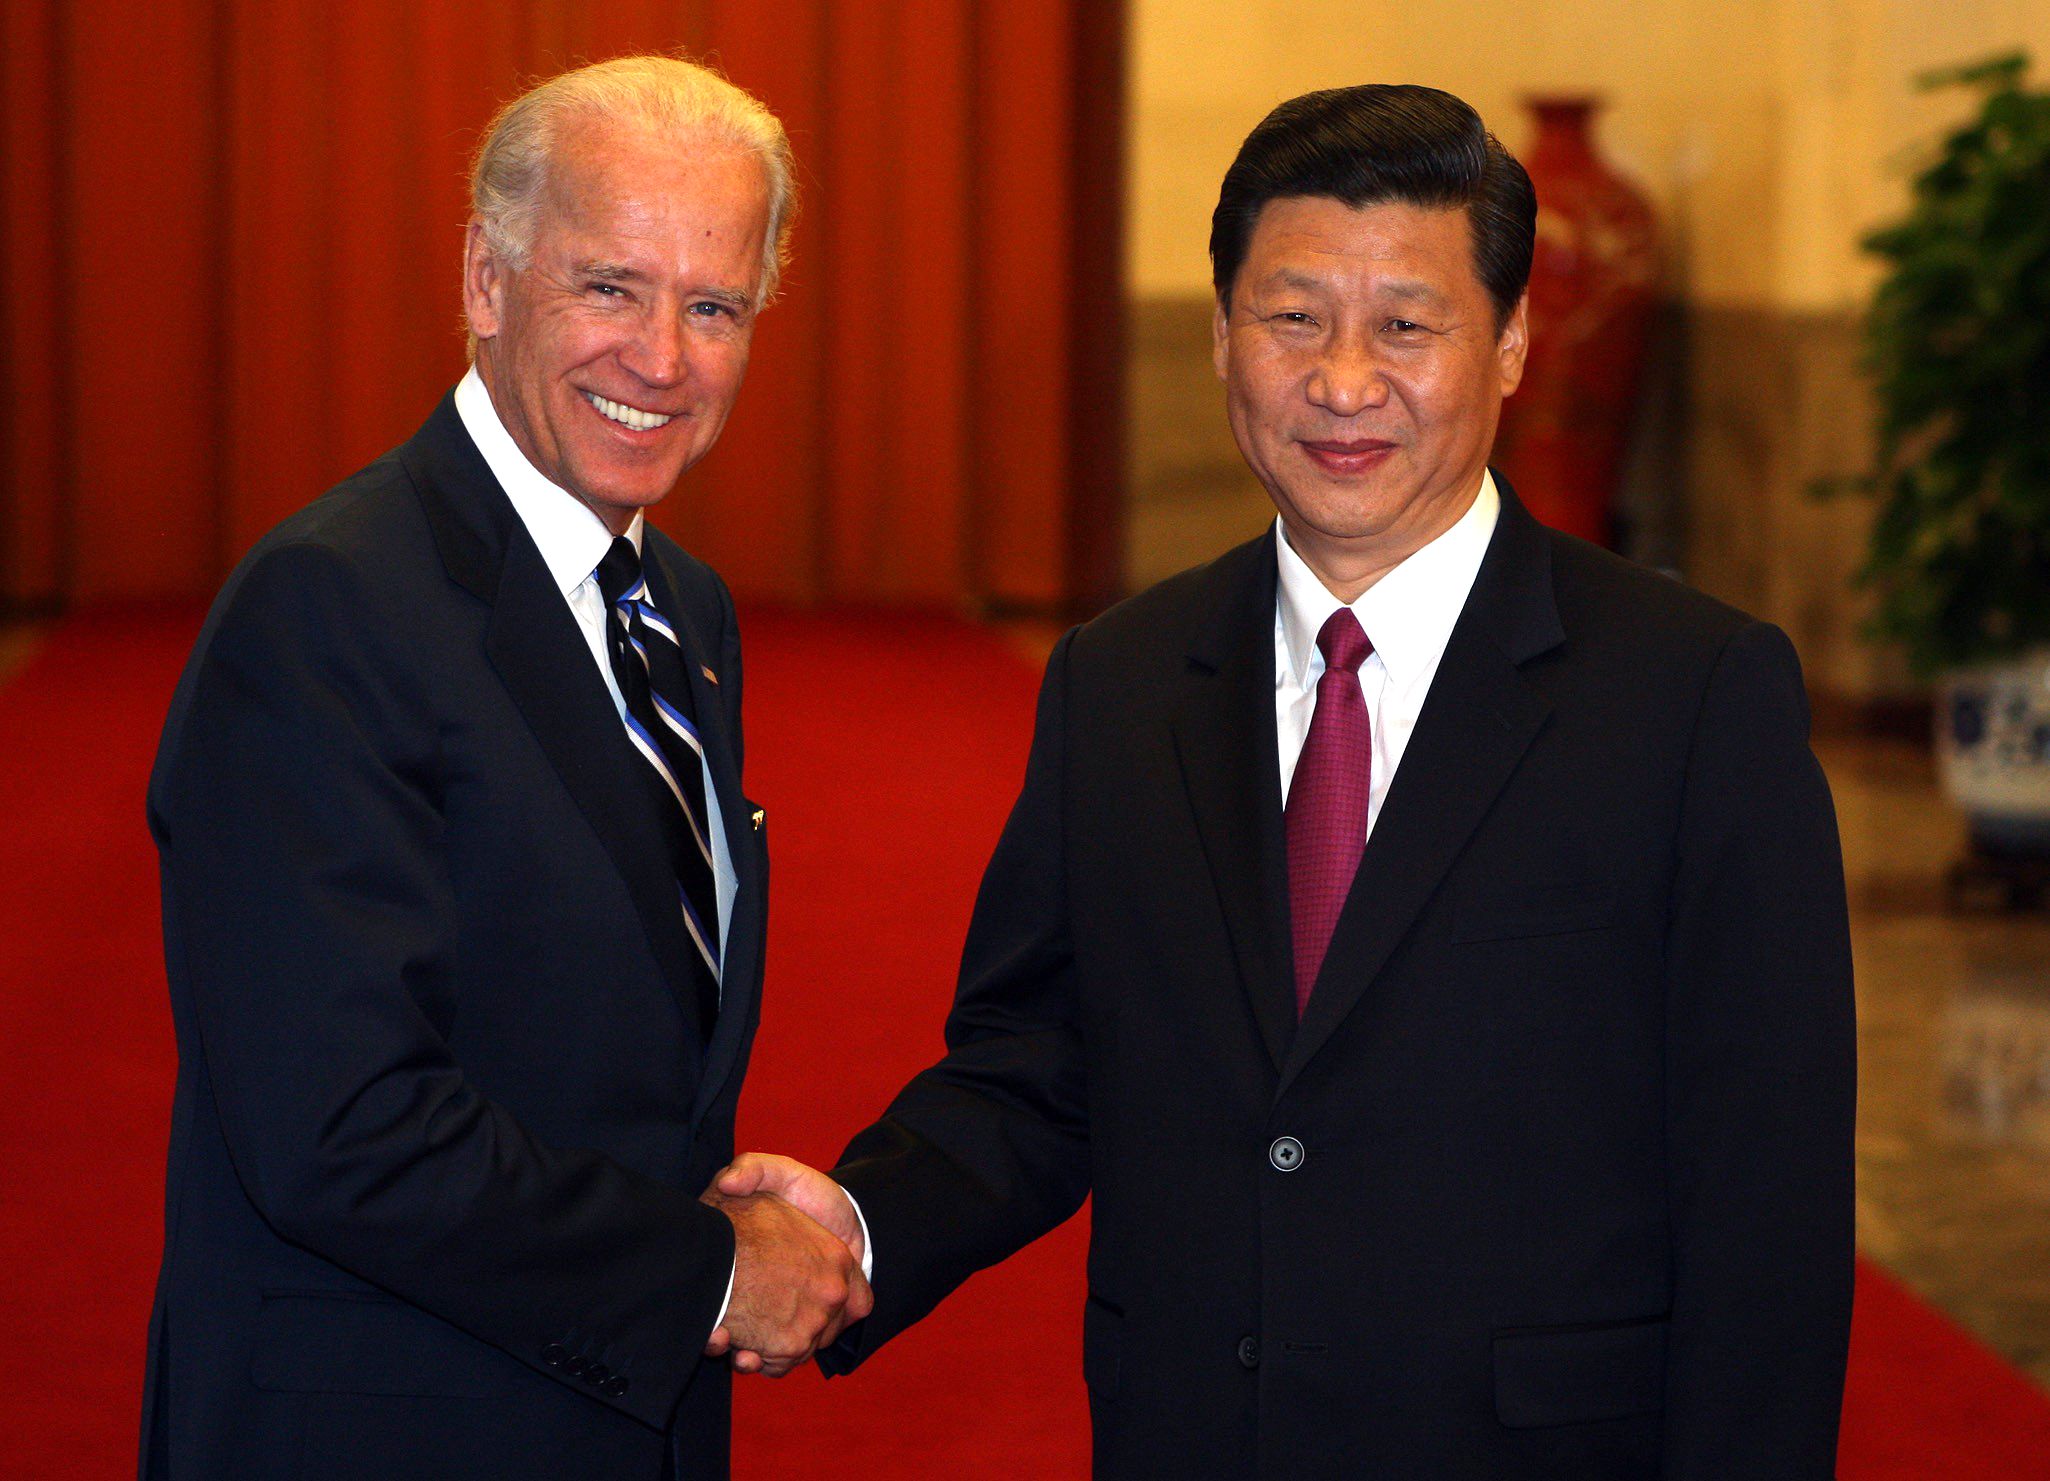 El entonces vicepresidente Joe Biden y Xi Jinping en 2011 (Quirky China/Shutterstock)